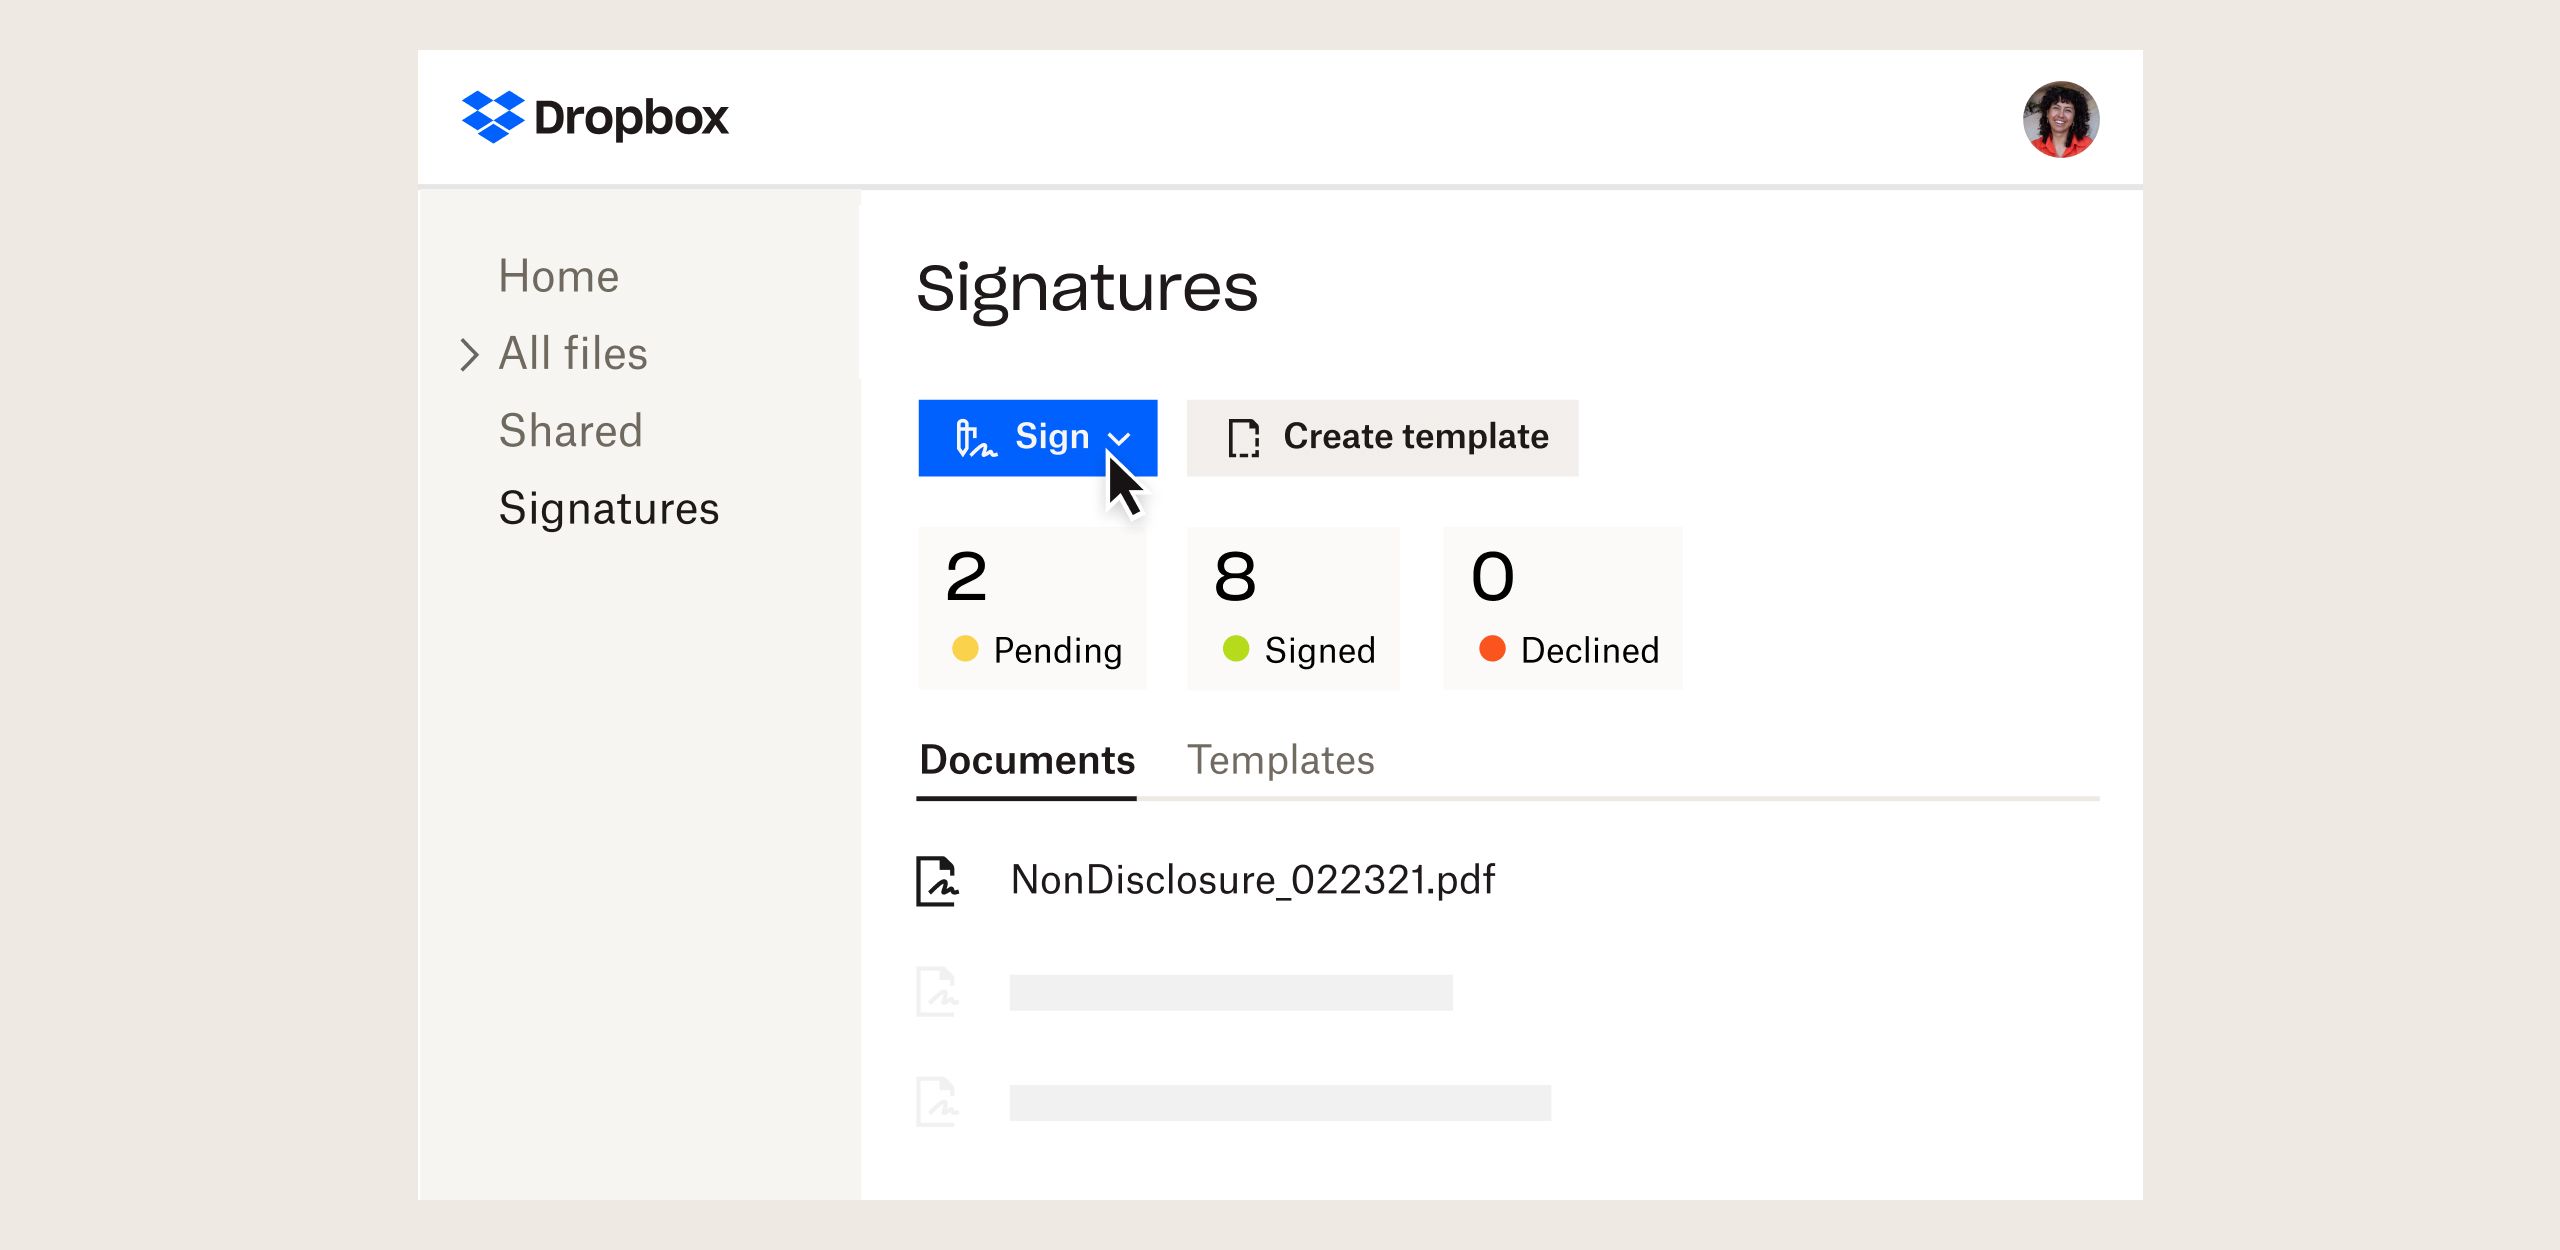 Interface do usuário do produto mostrando a funcionalidade de assinatura eletrônica no Dropbox 